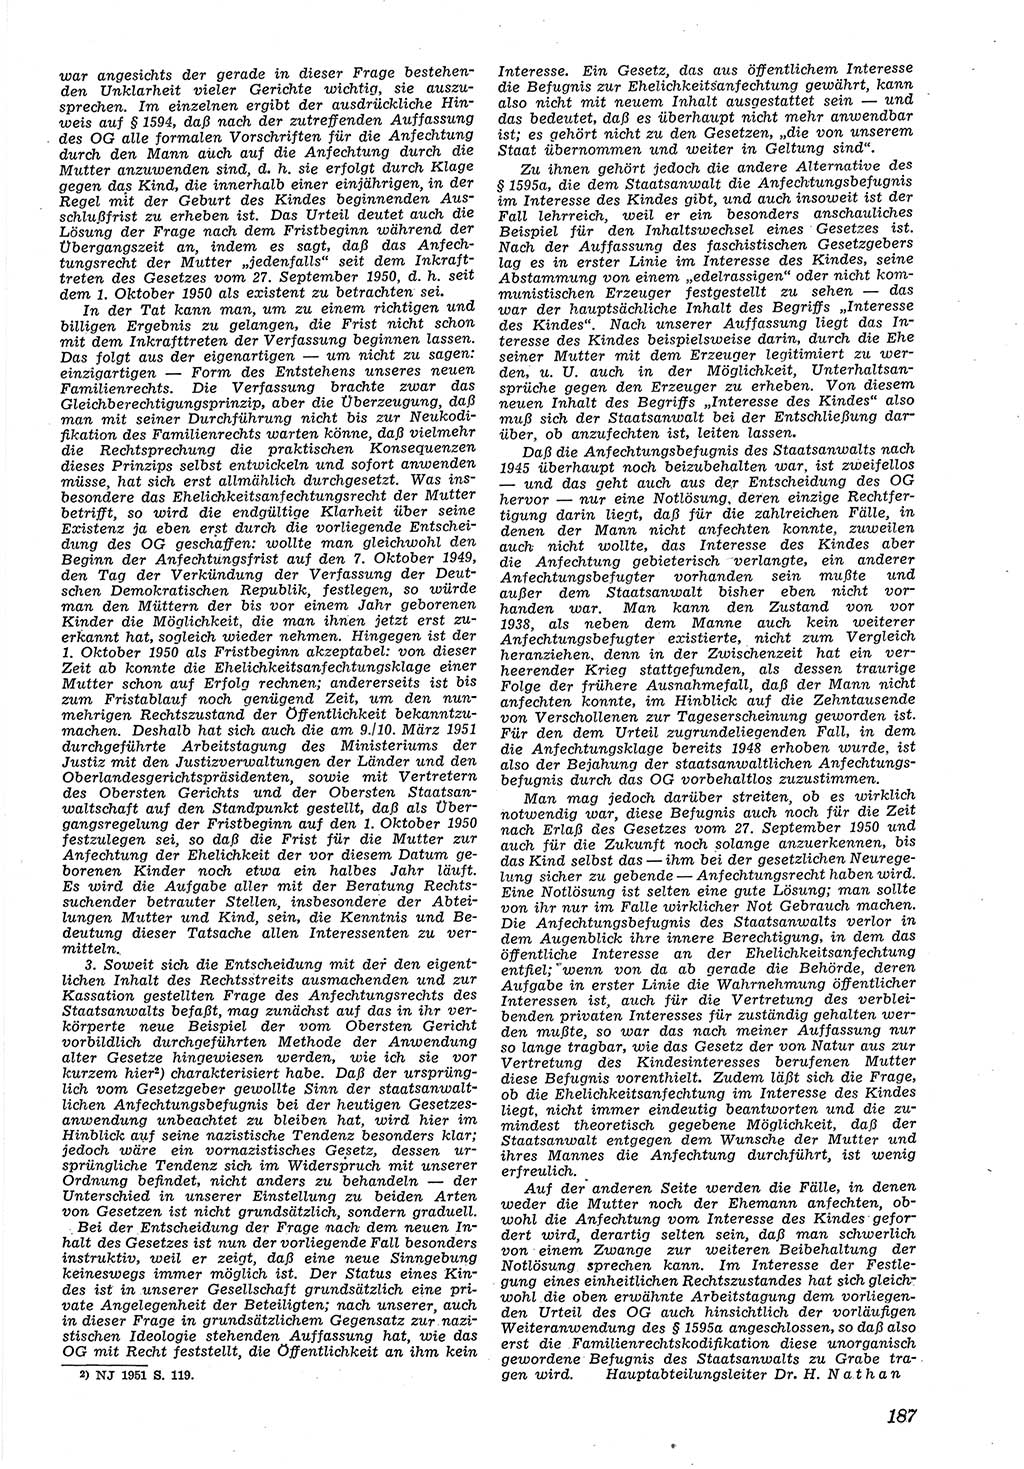 Neue Justiz (NJ), Zeitschrift für Recht und Rechtswissenschaft [Deutsche Demokratische Republik (DDR)], 5. Jahrgang 1951, Seite 187 (NJ DDR 1951, S. 187)